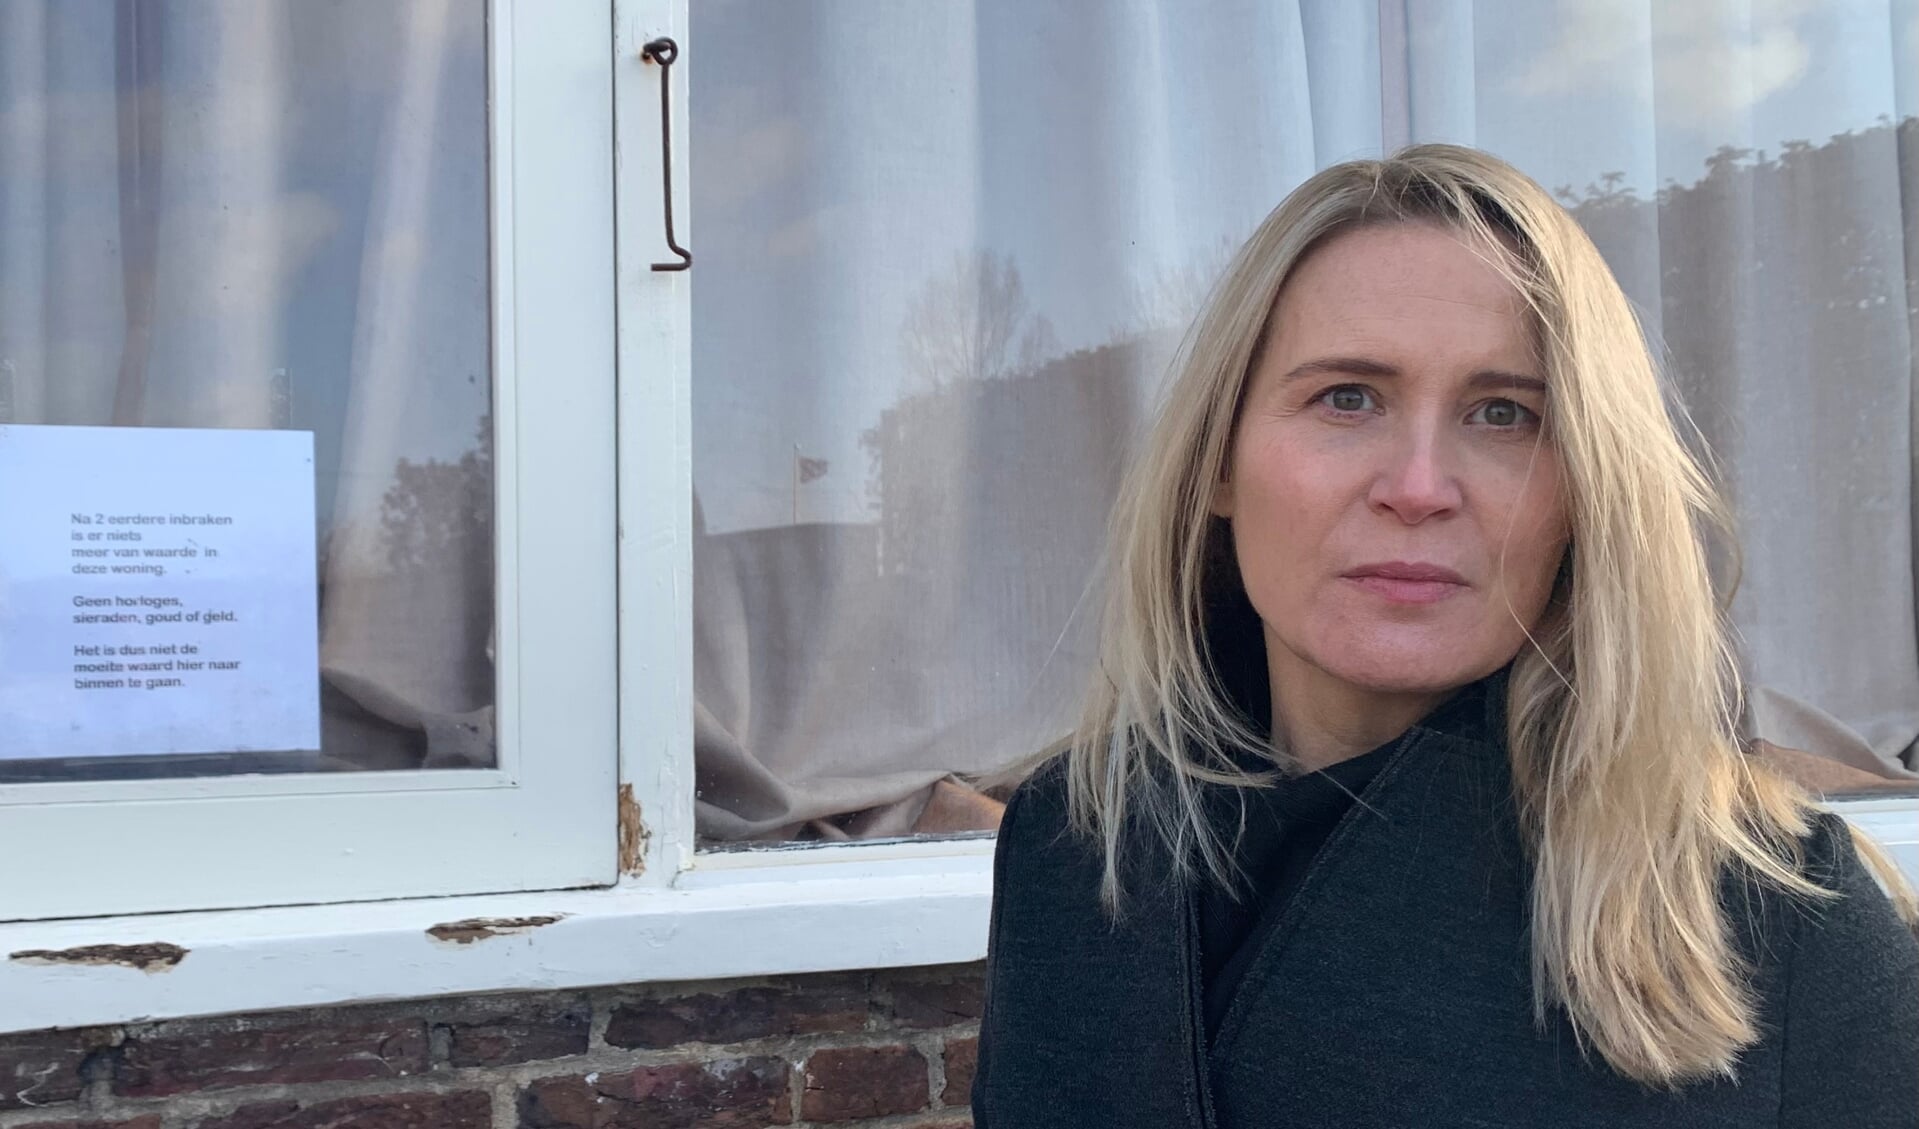 VVD-raadslid Janneke Leegstra bij een Amstelveense woning waar recent is ingebroken met zichtbare braakschade aan de kozijnen.